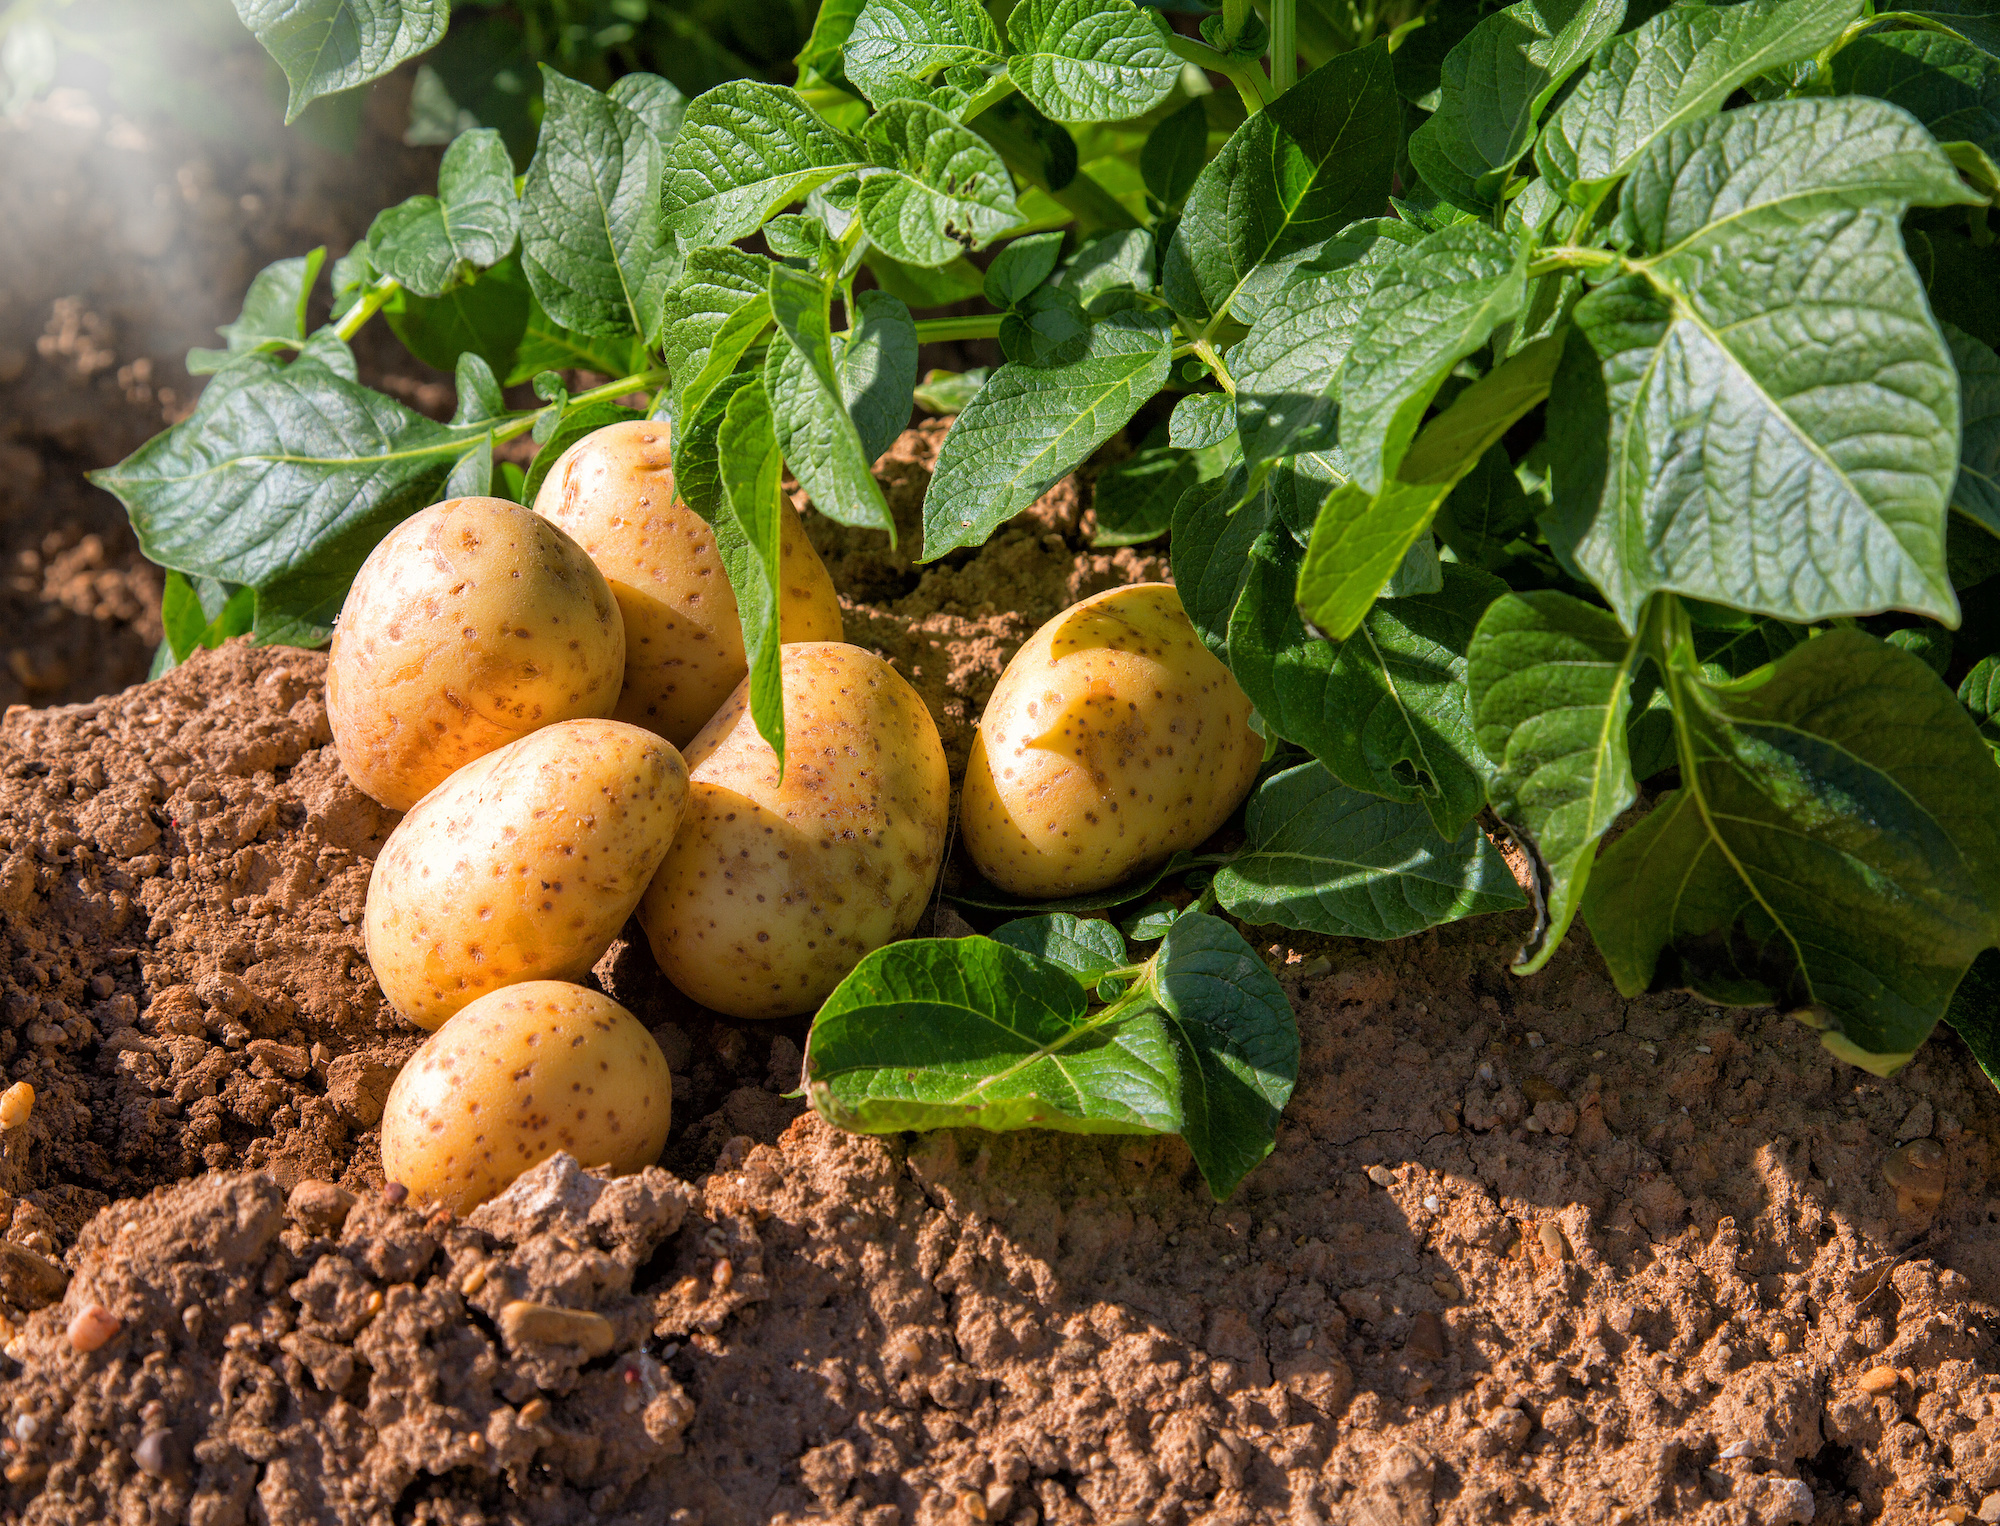 De belles pommes de terre obtenues avec peu de produits phytosanitaires grâce à CRISPR/Cas9. (Photo: Adobe Stock)